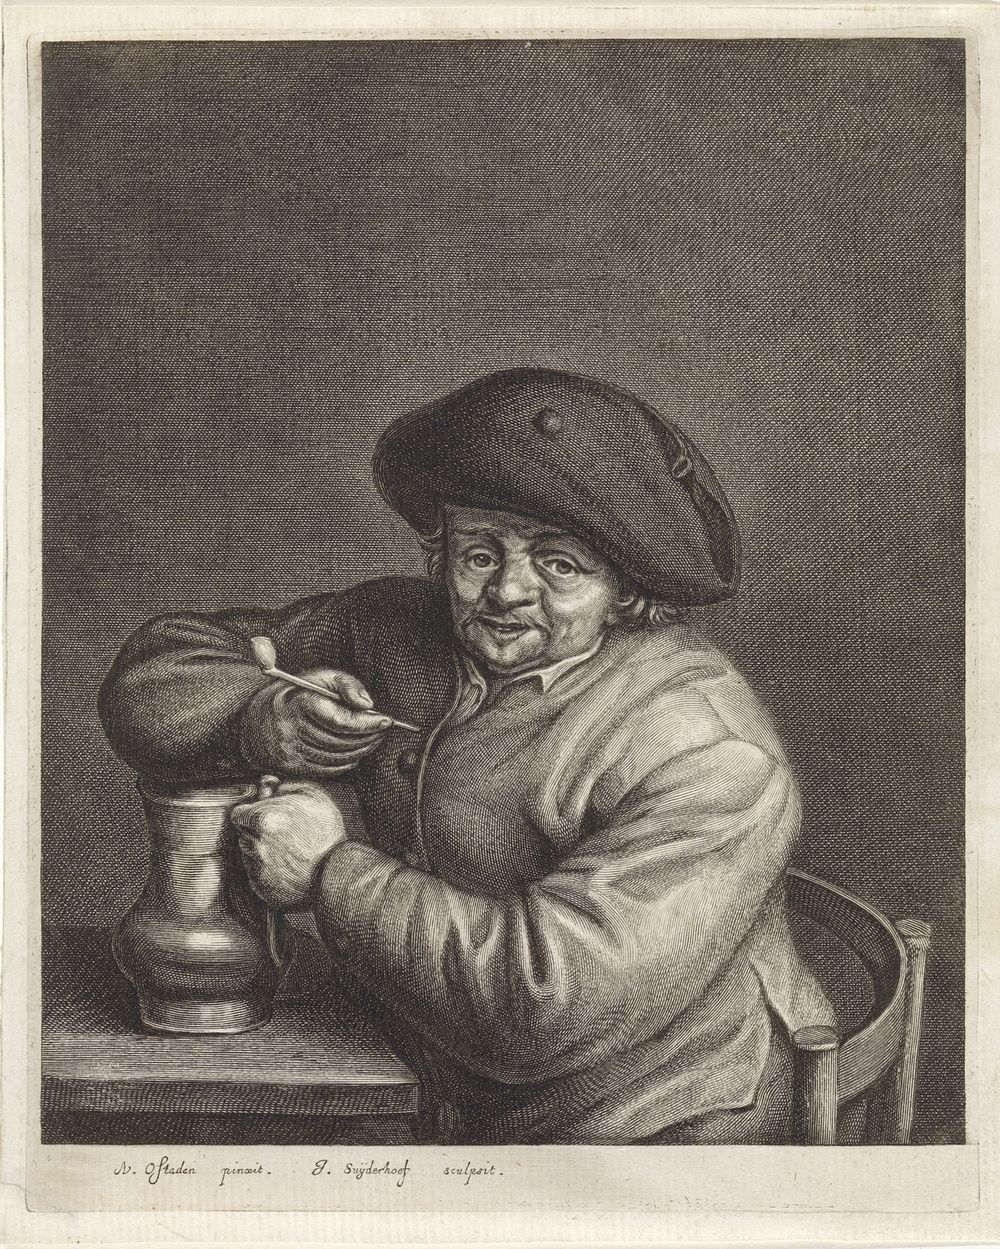 Boer met pijp en kruik in de hand bij een tafel (c. 1623 - 1686) by Jonas Suyderhoef and Adriaen van Ostade